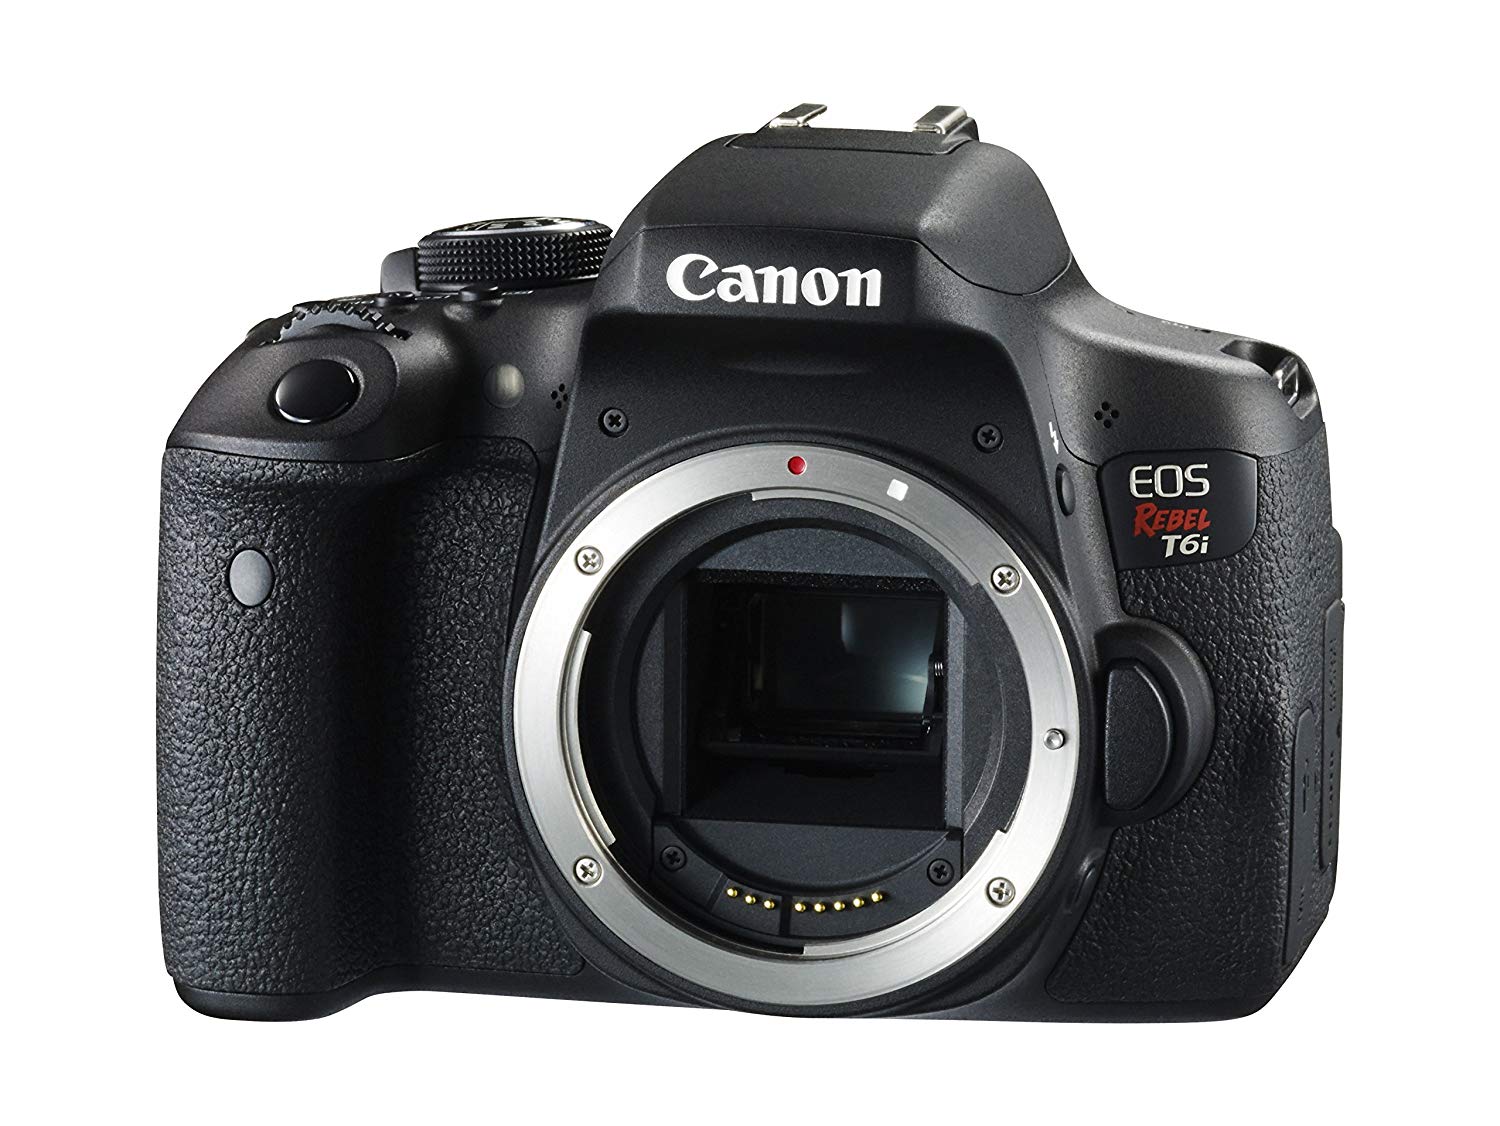 Canon EOS विद्रोही T6i डिजिटल एसएलआर (बॉडी ओनली) - वाई-फाई सक्षम